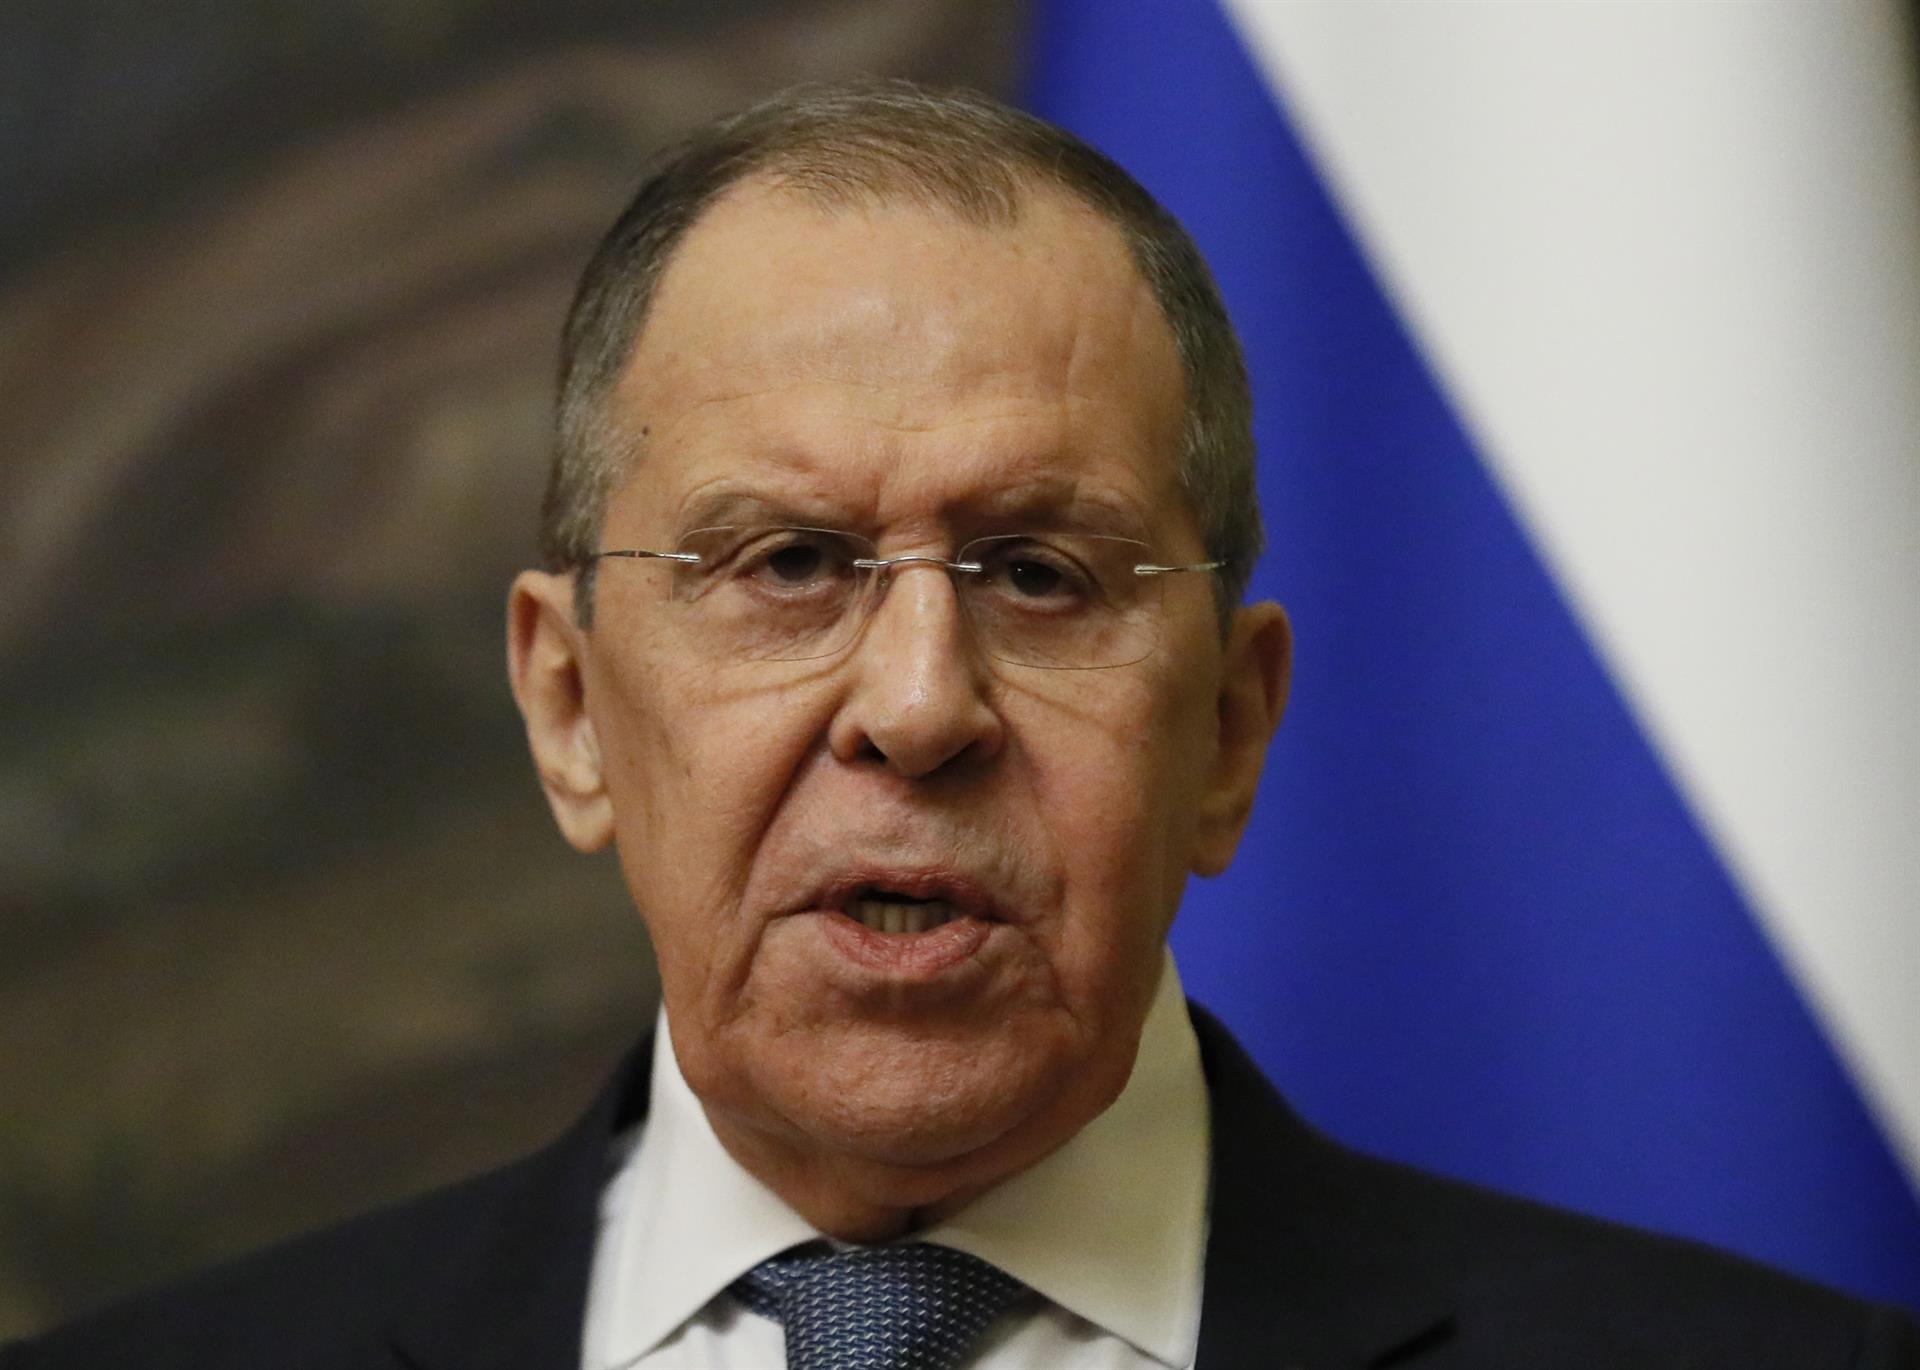 El último disparate de Lavrov: condiciona la paz en Ucrania a la creación de un “nuevo orden mundial”